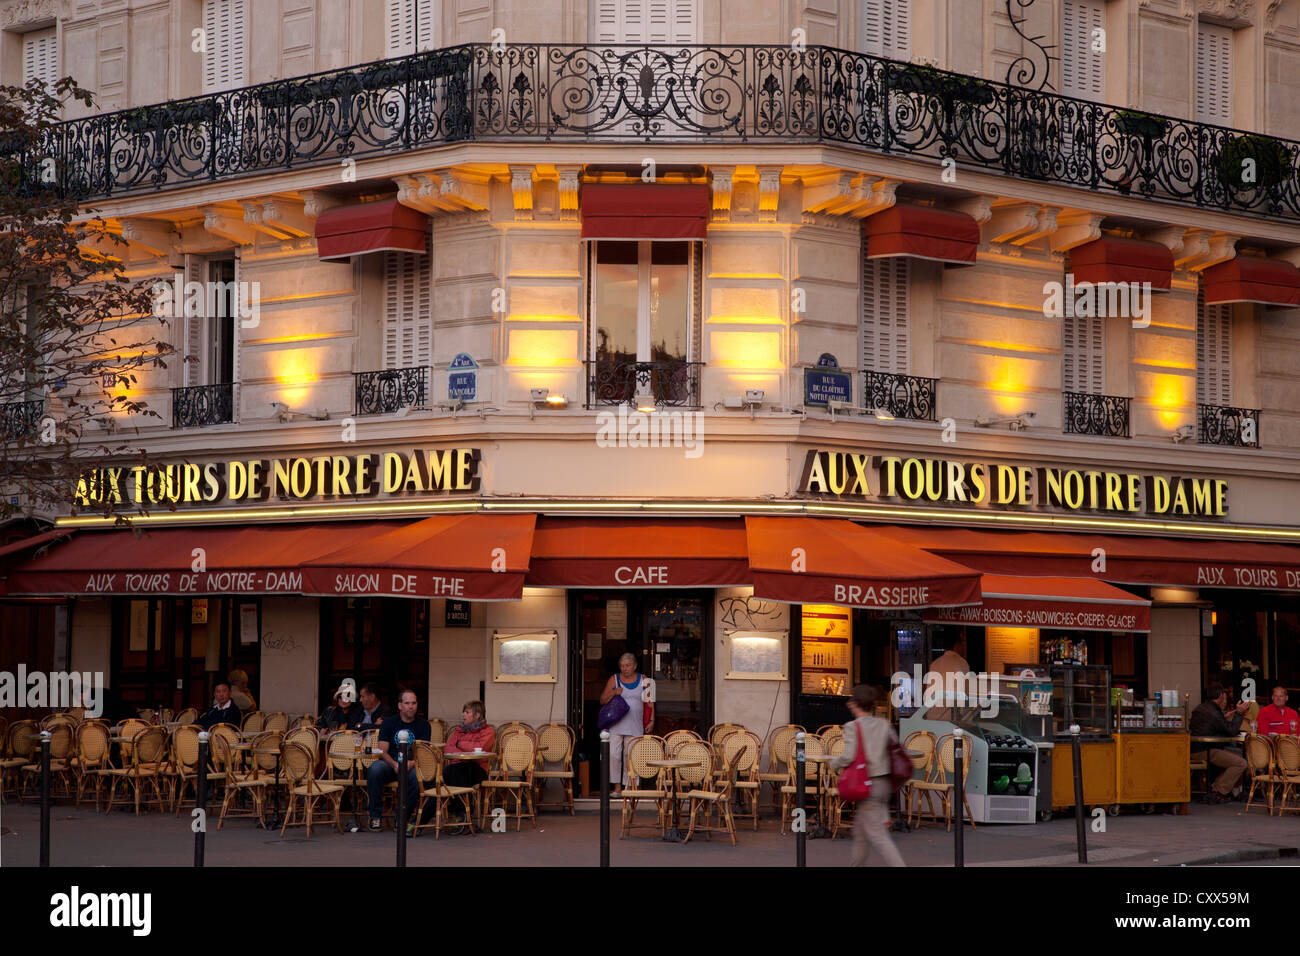 Cafe aux tours de Notre Dame à Paris, rue du Cloître-Notre-Dame Photo Stock  - Alamy